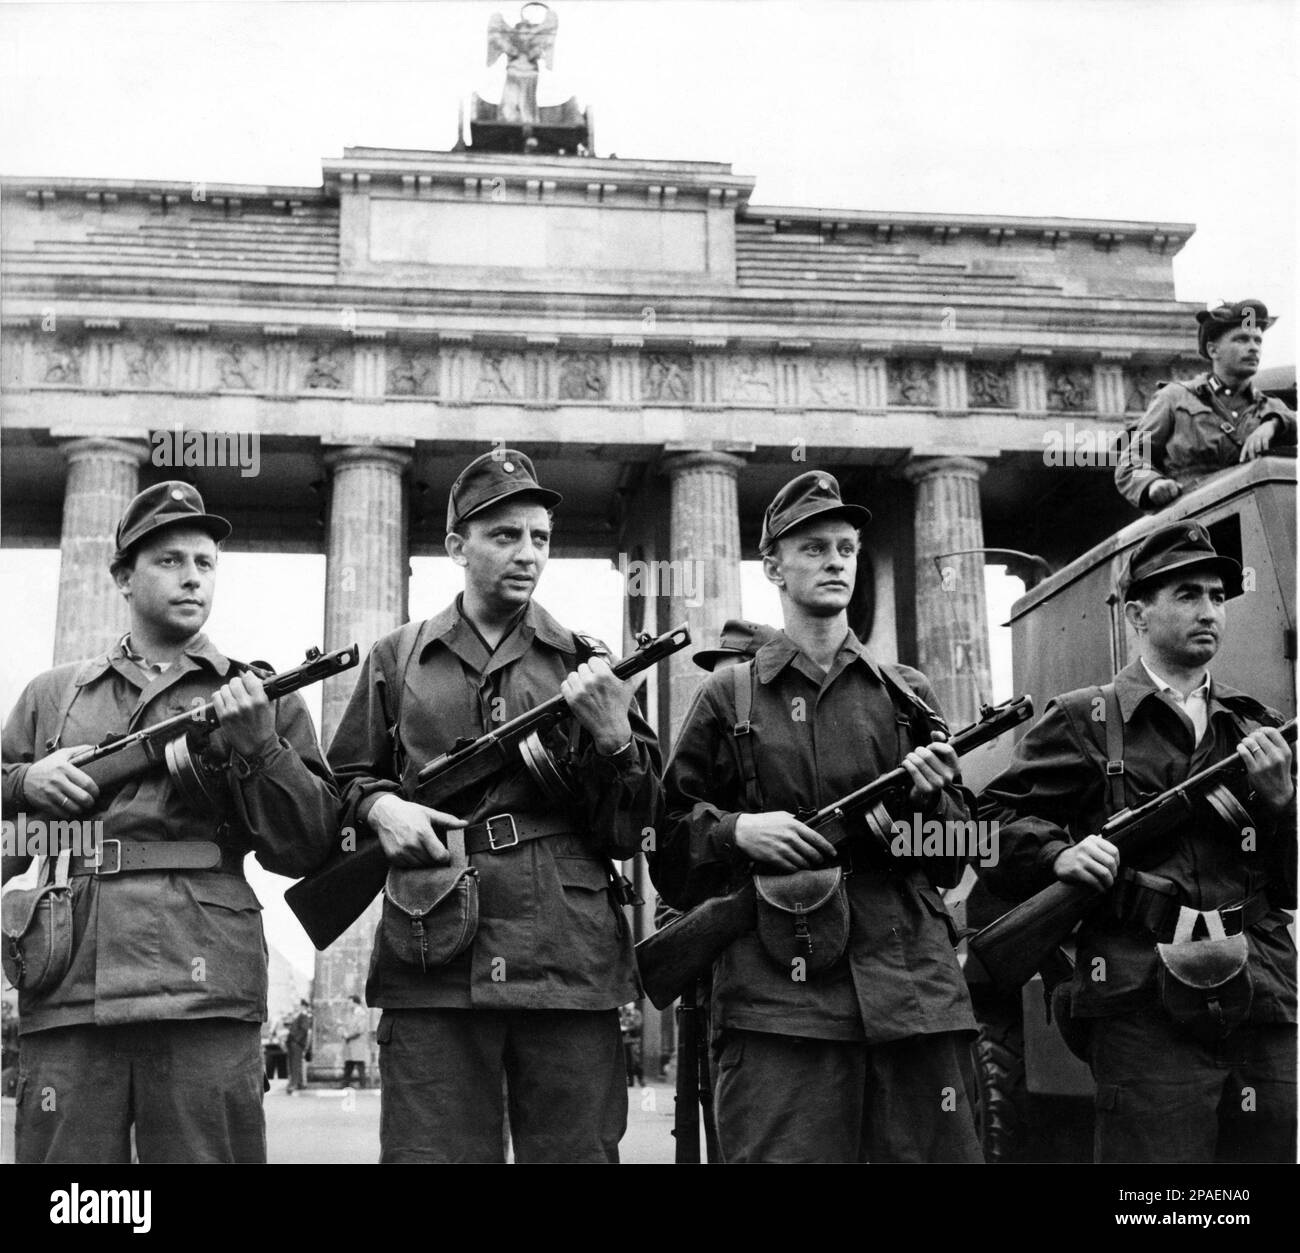 1961 , BERLIN , ALLEMAGNE : les forces armées de LA RÉPUBLIQUE DÉMOCRATIQUE ALLEMANDE sont garantes de la préservation de la paix . Le gouvernement a agacé le 13 août 1961 , les membres des Forces populaires nationales , la milice et la police populaire se tiennent sur la garde aux frontières de Berlin démocratique . Dans cette photo, les camrades de la milice populaire protègent la frontière de Berlin démocratique en face du célèbre monument de Berlin la PORTE DE BRANDEBOURG - BERLINO - ITALIA - FOTO STORICHE - HISTOIRE - GEOGRAFIA - GÉOGRAPHIE - ARCHITETURA - ARCHITECTURE - PIAZZA - PORTA DI BRANDENBURGO - REPUB Banque D'Images